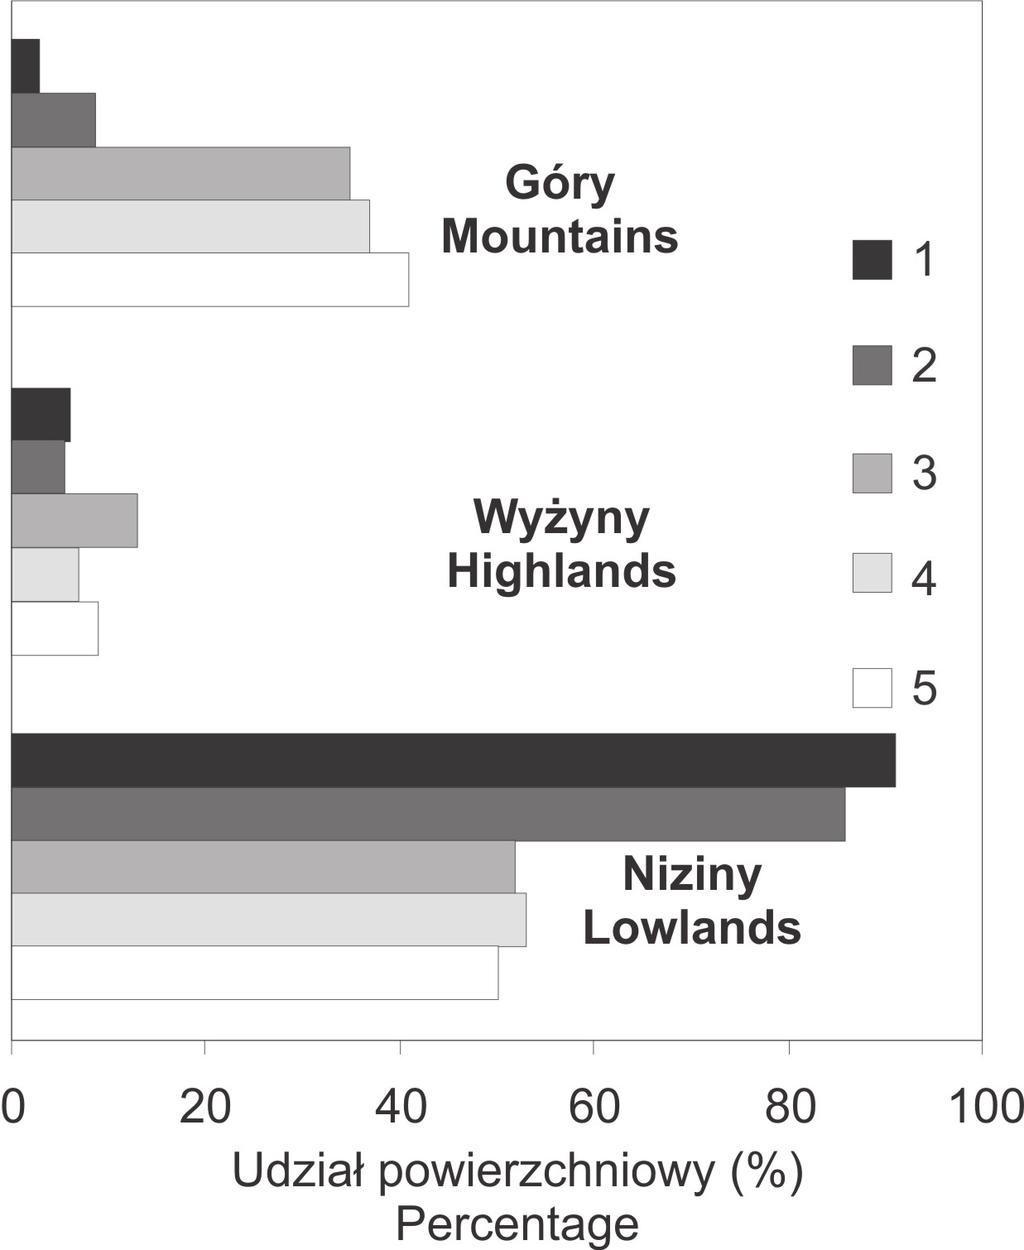 282 ROCZNIKI BIESZCZADZKIE 25 (2017) Ryc. 1. Powierzchnia lasów i liczba parków narodowych na tle zróżnicowania wysokościowego obszaru Polski na góry (>500 m n.p.m.), wyżyny (300-500 m n.p.m.) i niziny (<300 m n.